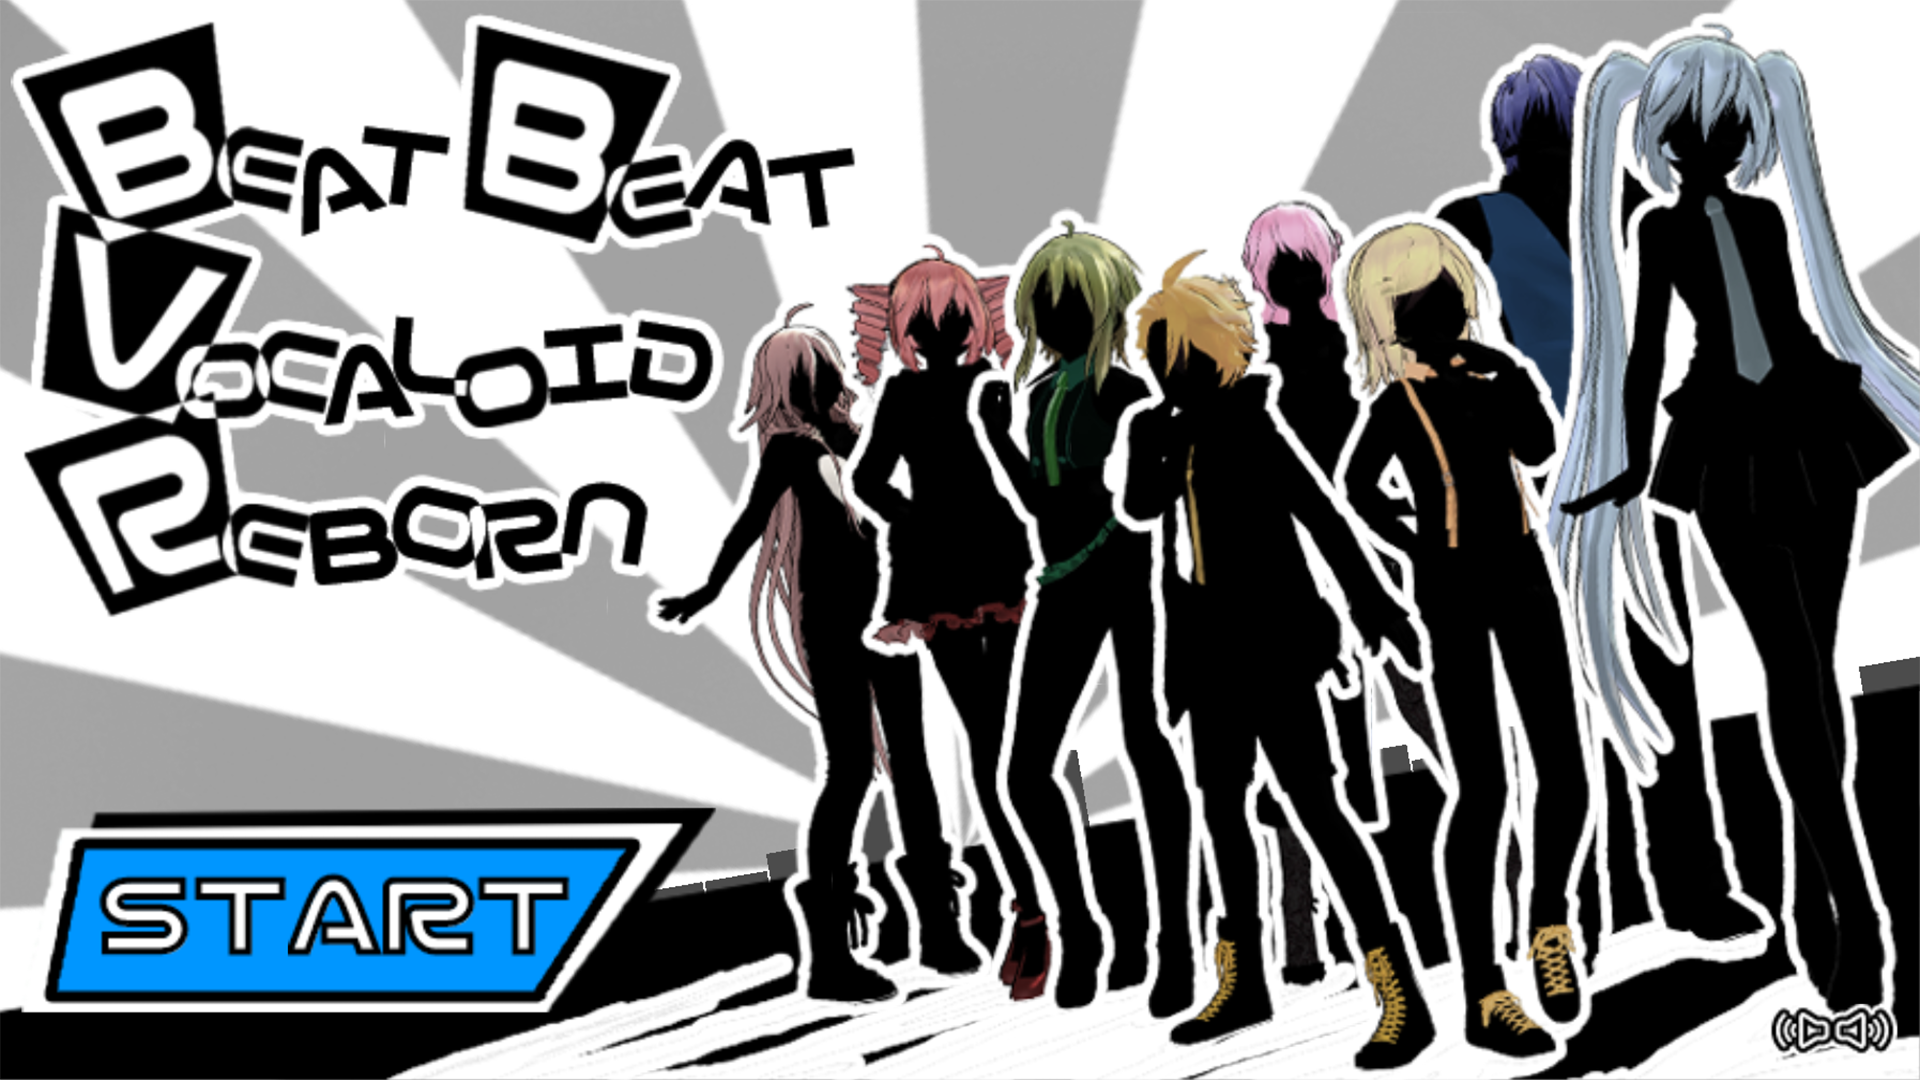 Screenshot 1 of Beat Beat Vocaloid Renascido 